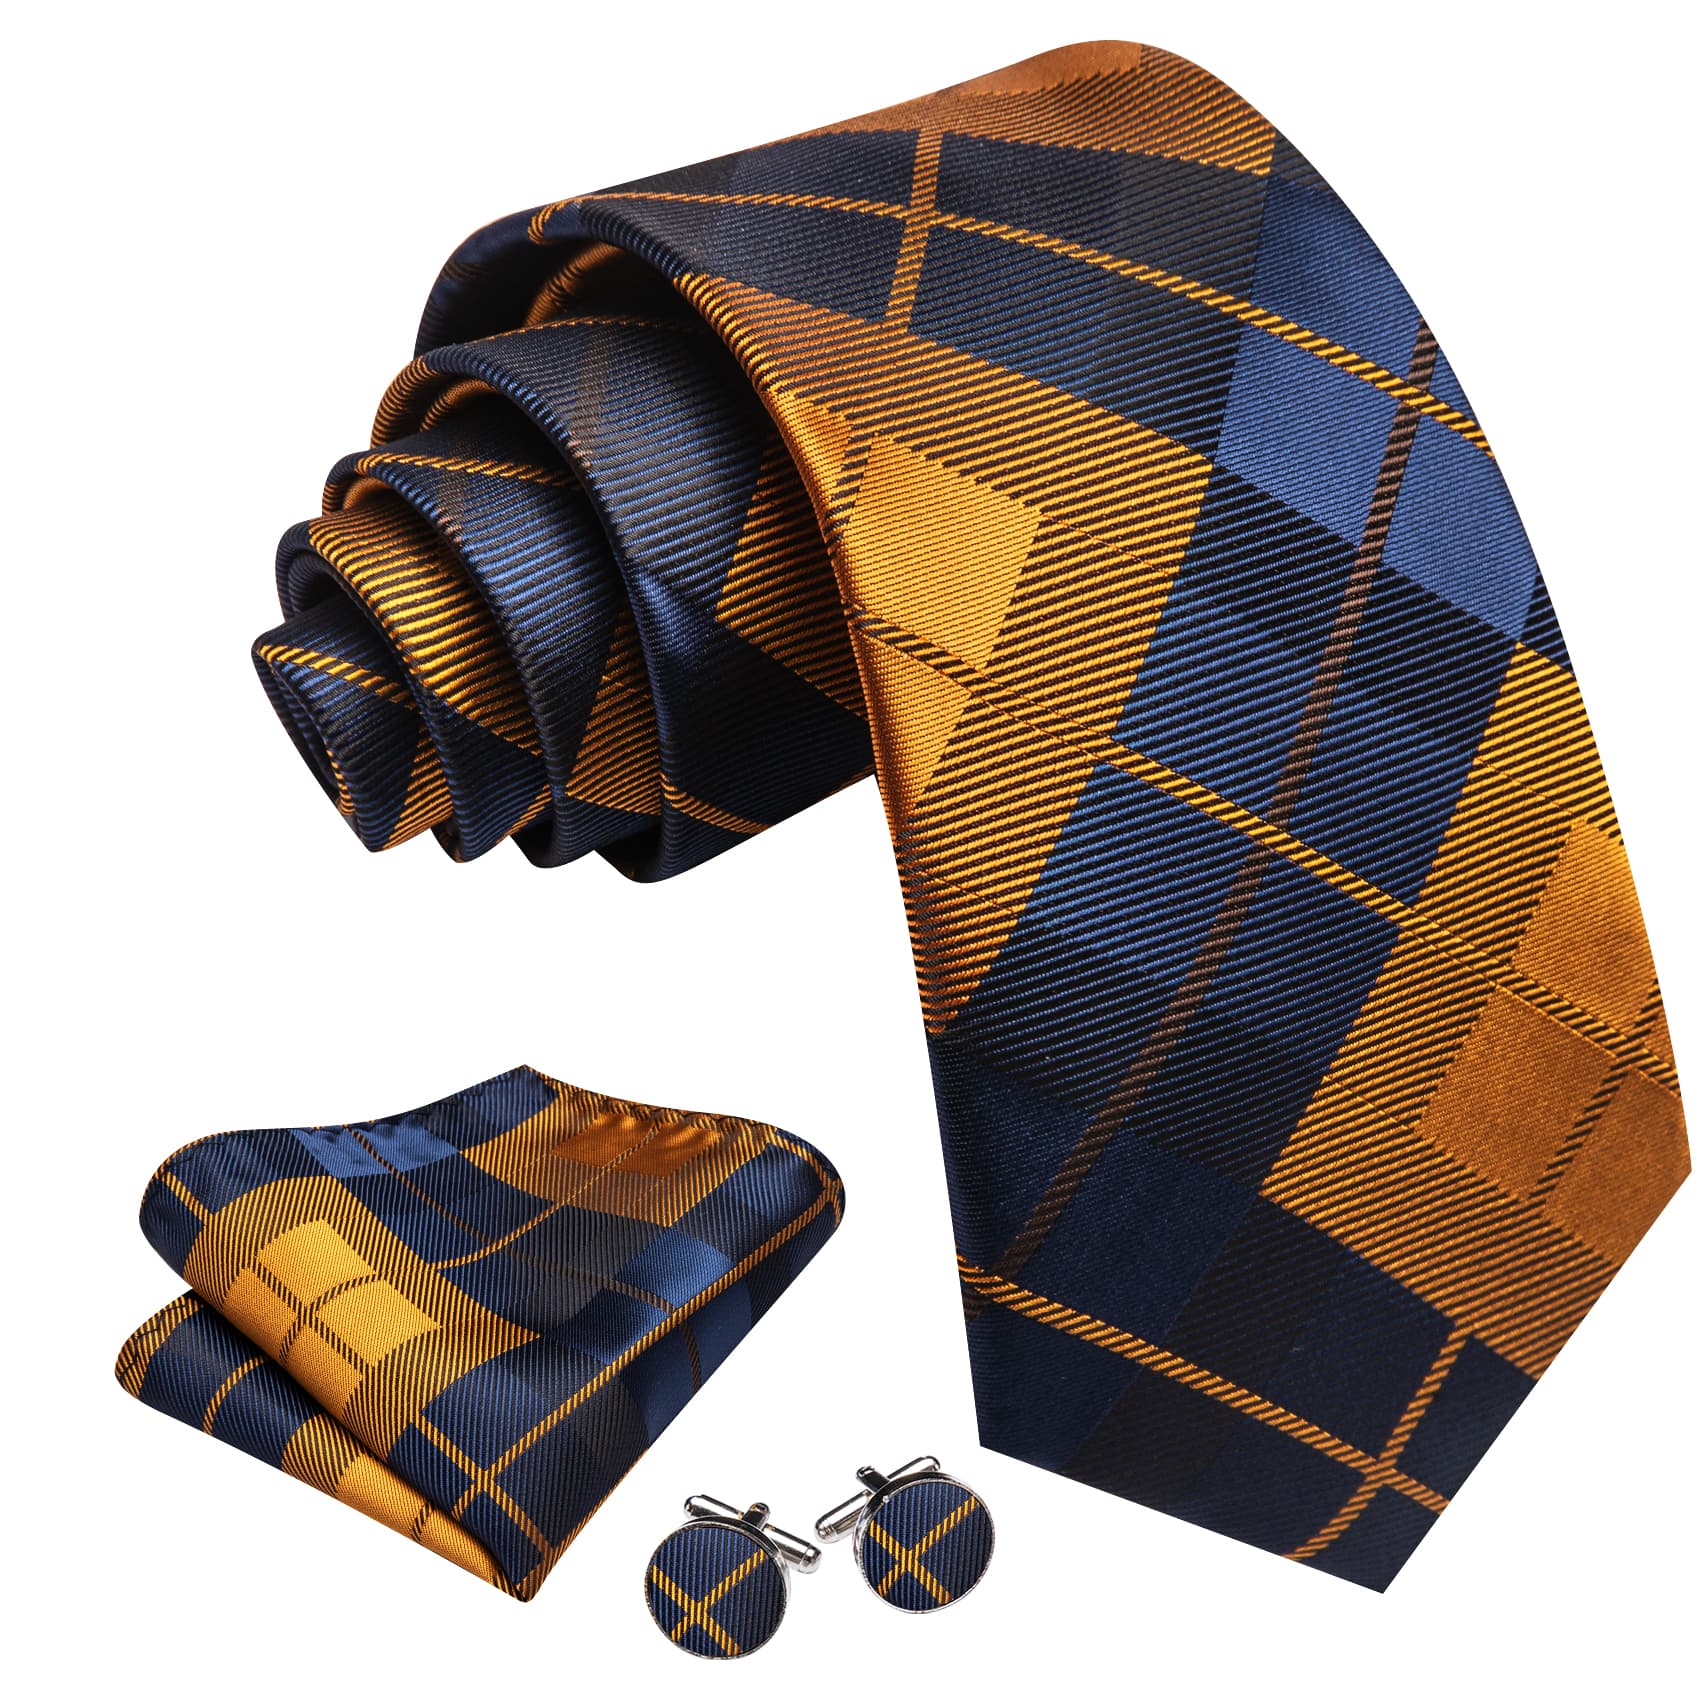  Plaid Tie Blue Golden Checkered Necktie and Cufflink Set